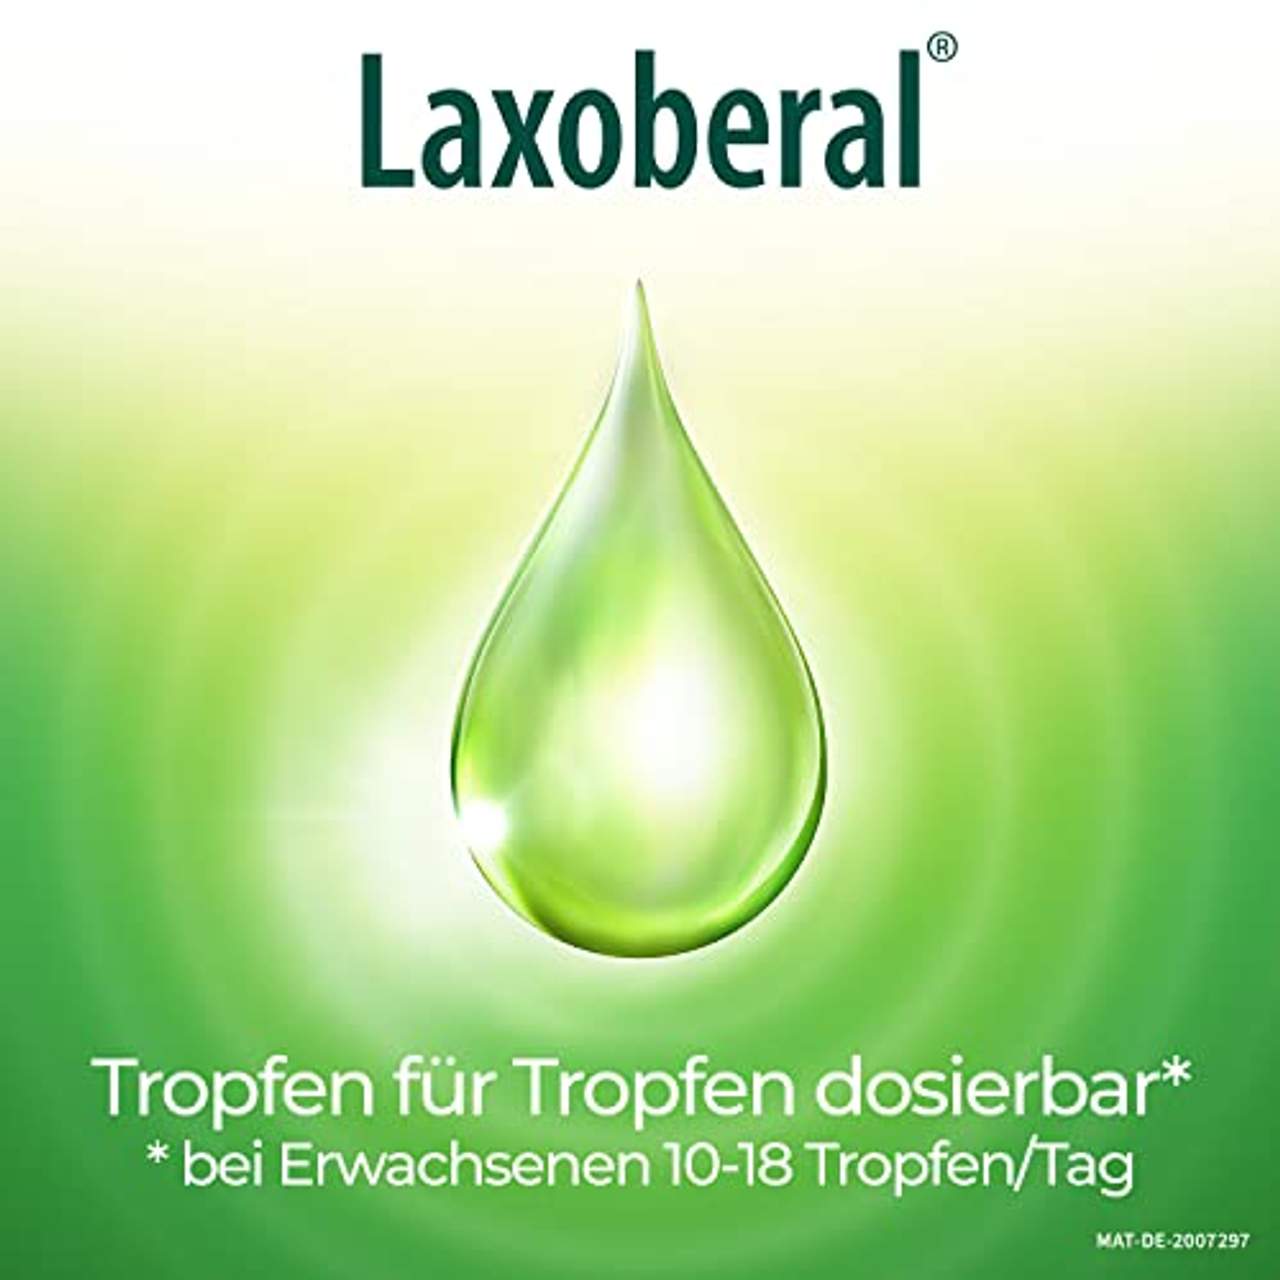 Laxoberal Abführ-Tropfen 50 ml